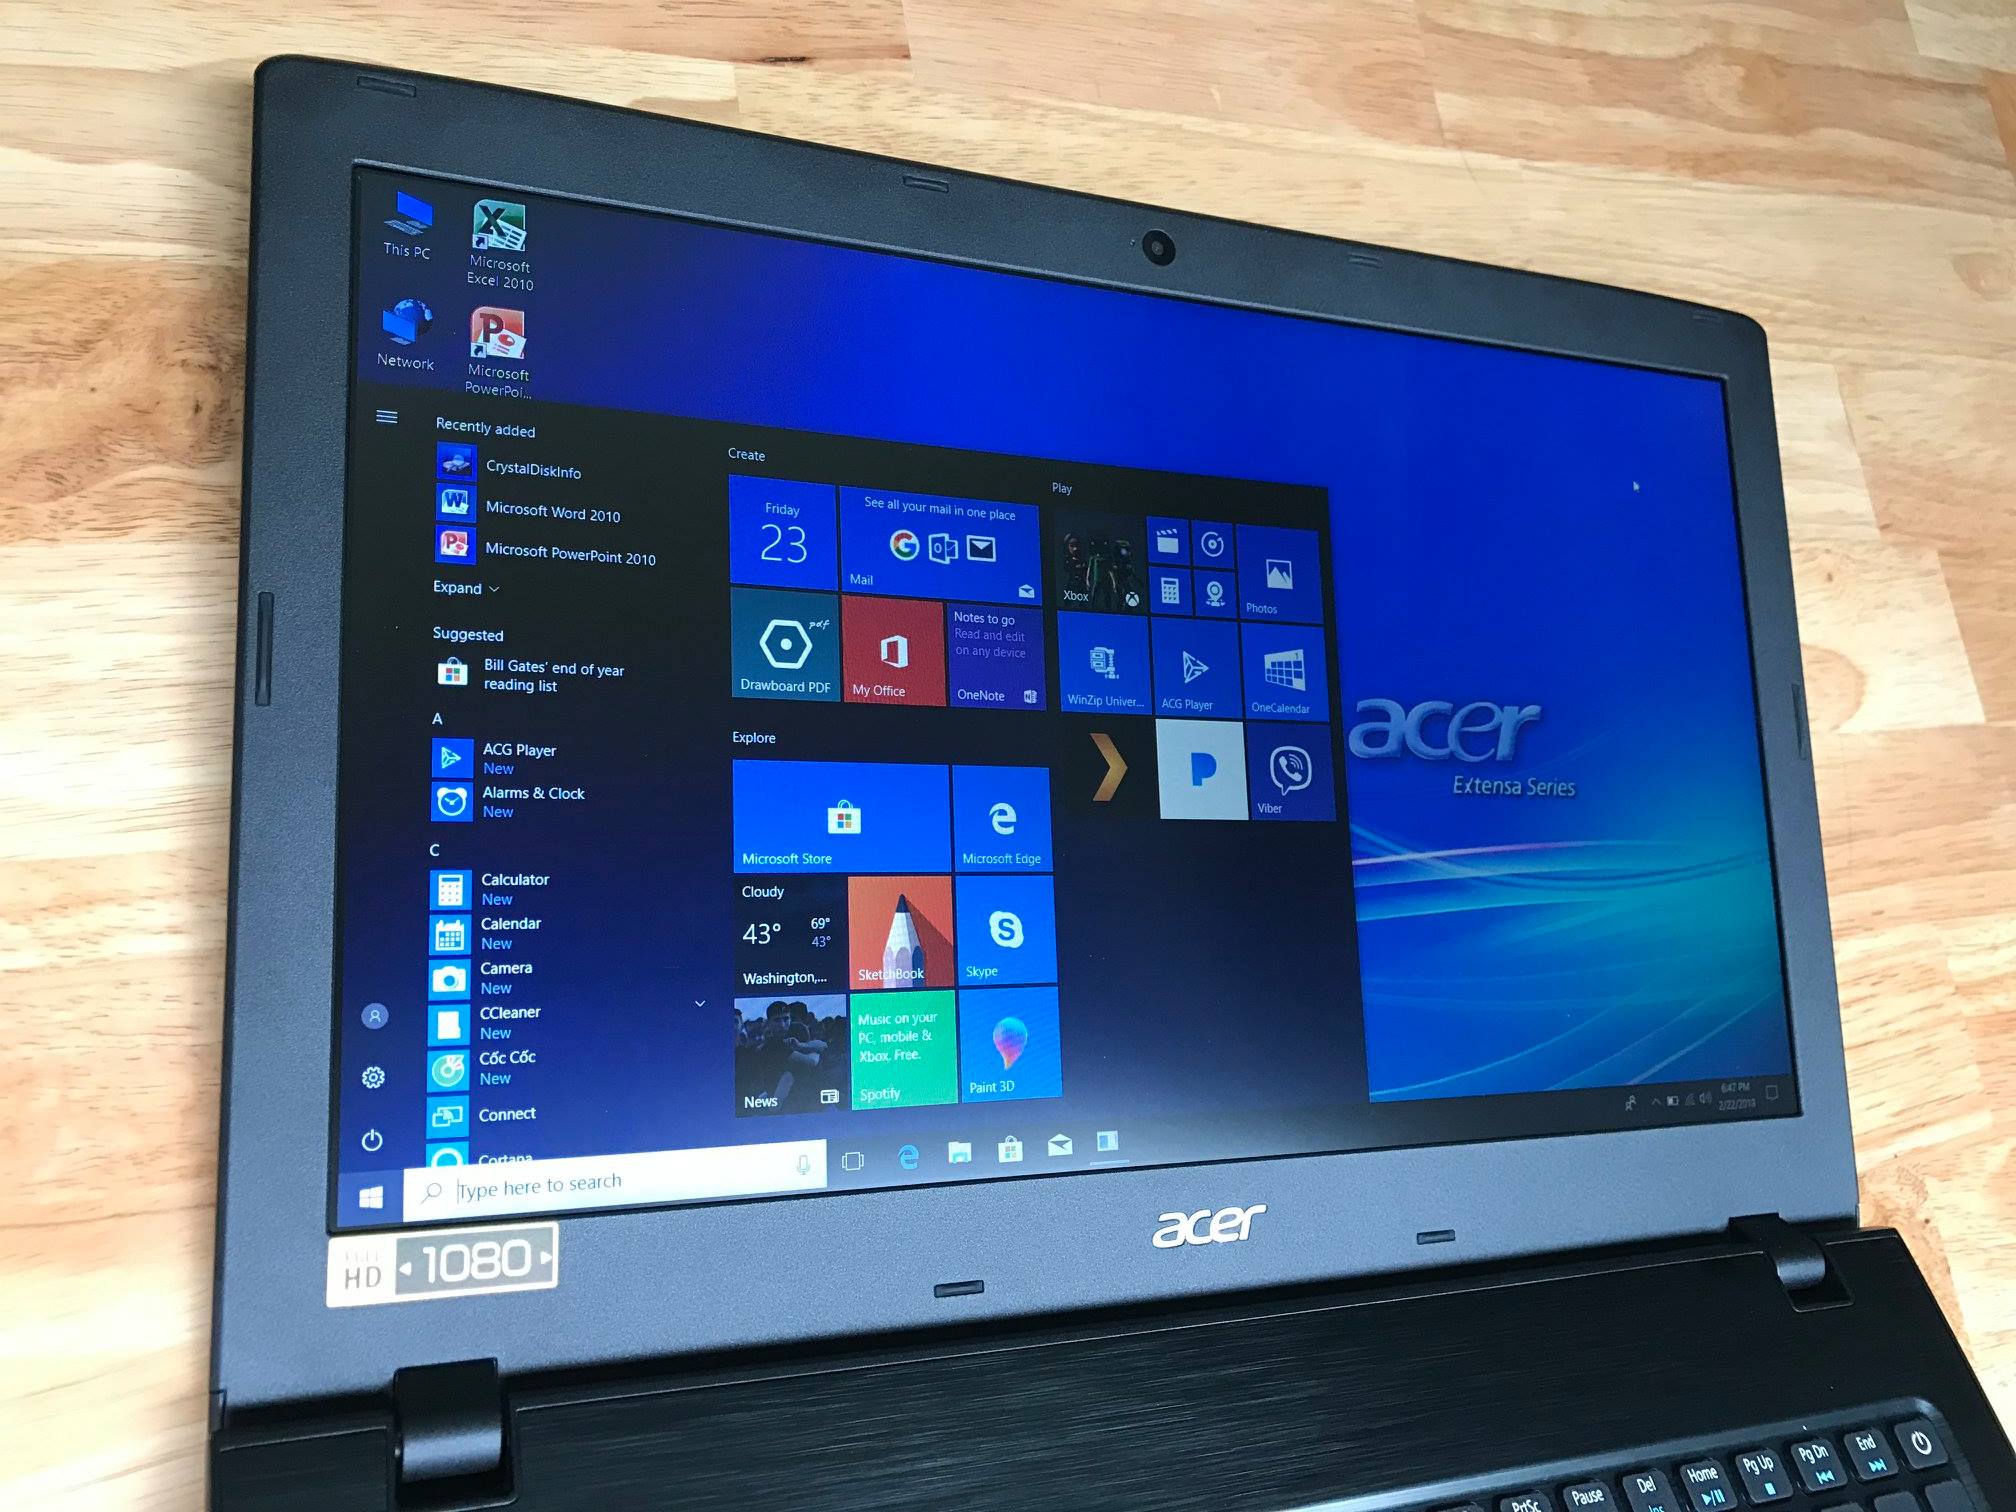 Acer E5-575, i3 7100u, 4G, SSD 128G, Full HD